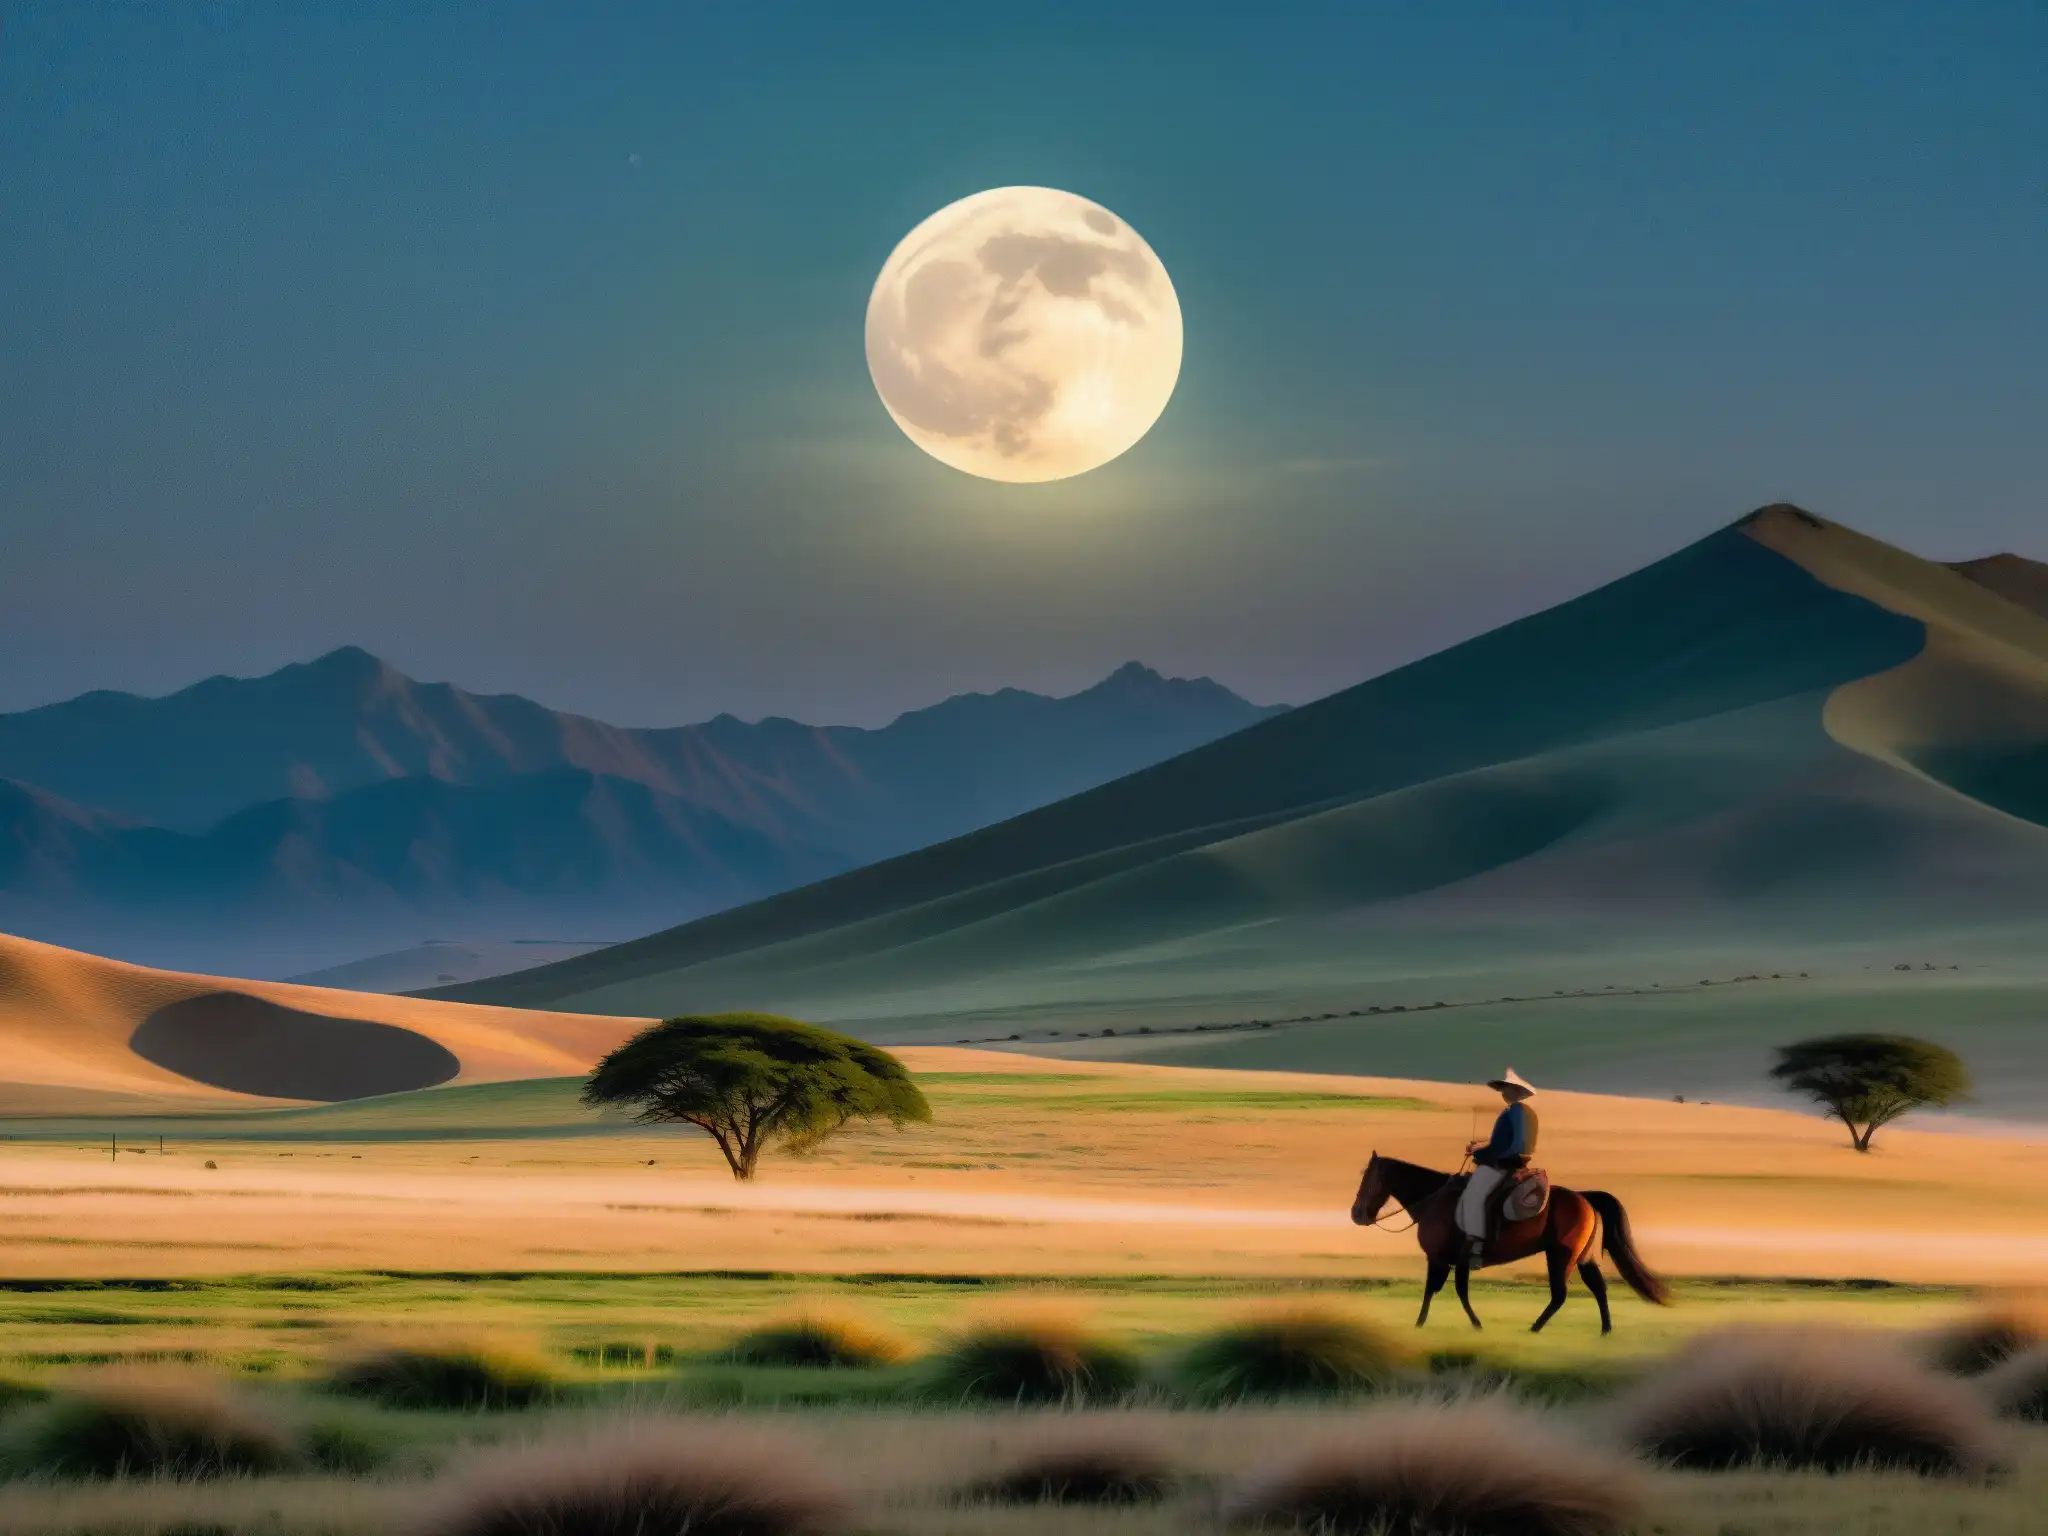 Un paisaje mágico de la pampa argentina con la luna llena transformando la escena